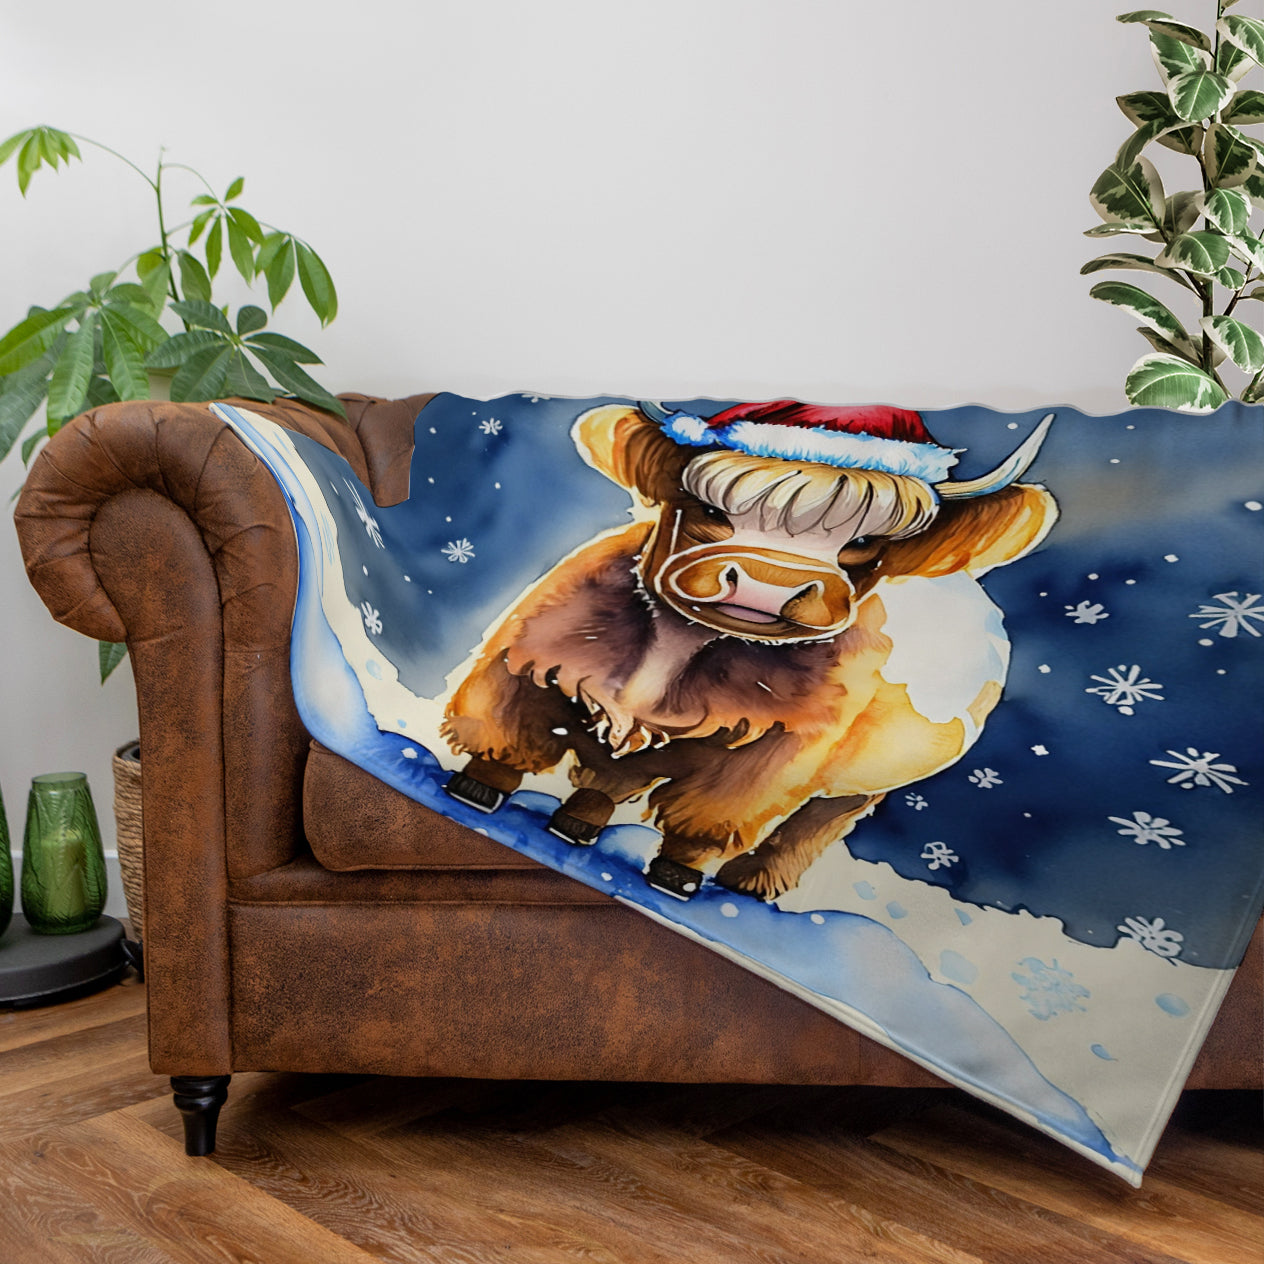 Highland Cow - Christmas Scene - Personalised Fleece Blanket